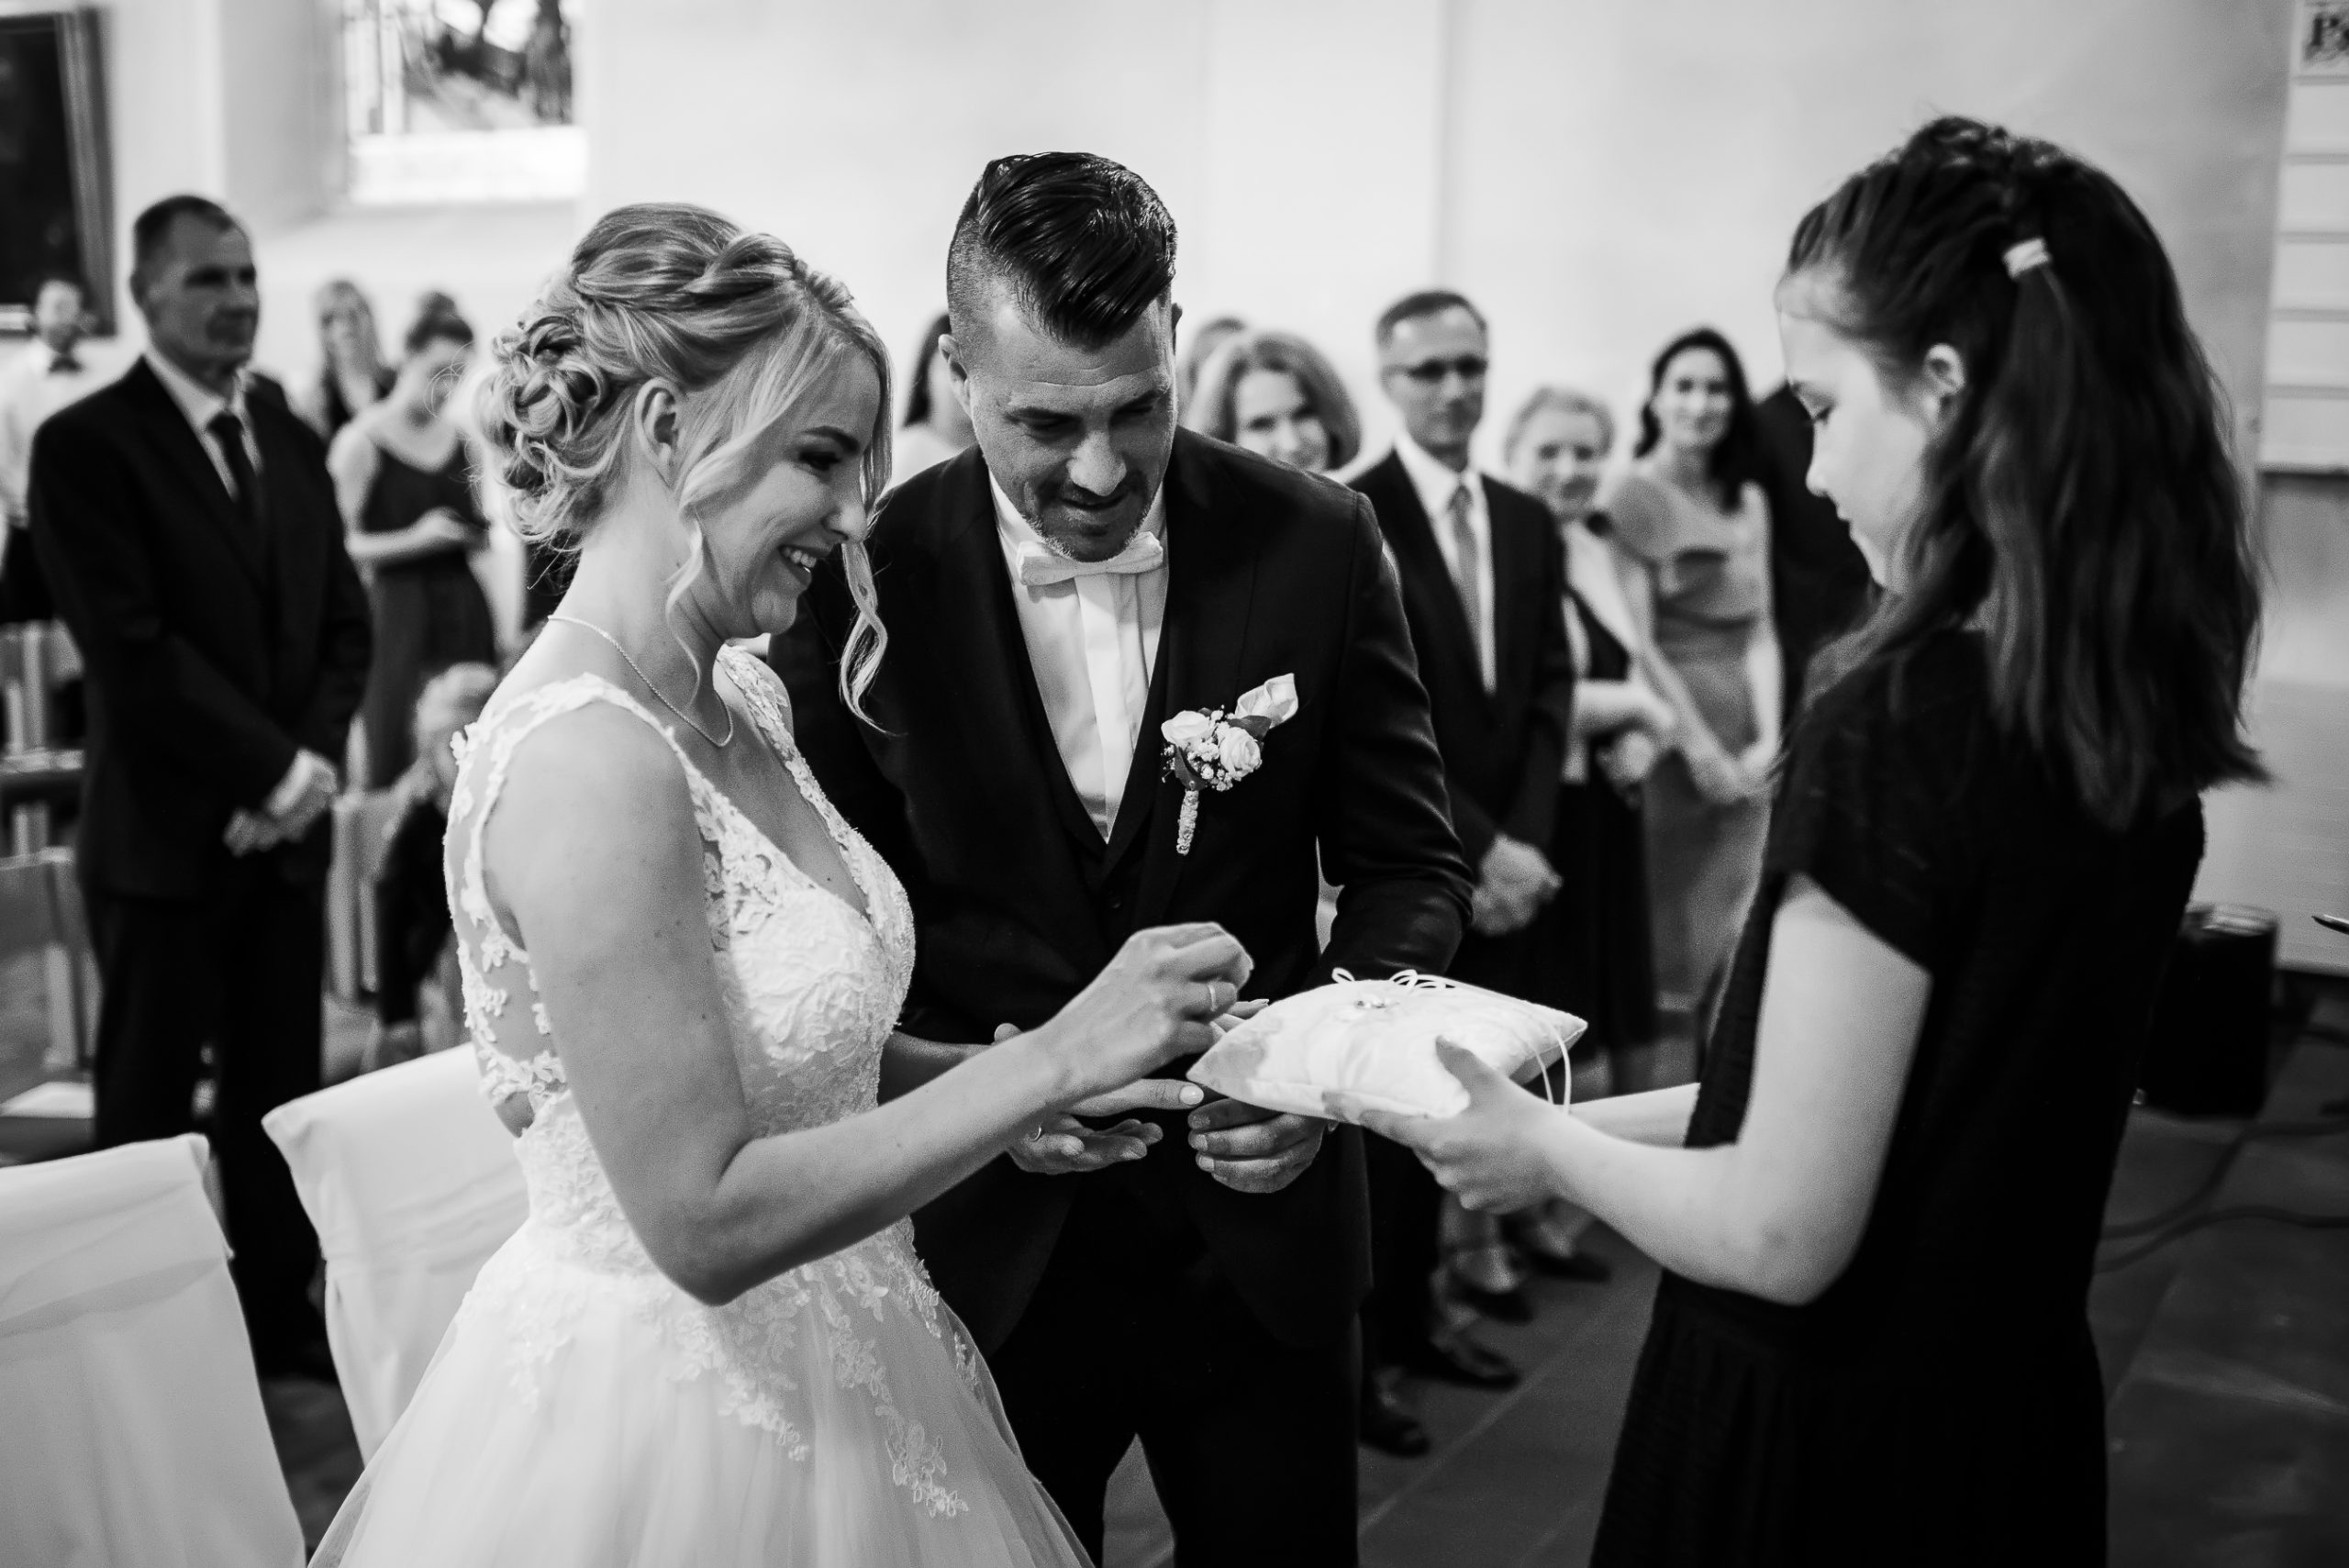 Schwarz-weiß-Foto von der ringtauschenden Zeremonie bei einer kirchlichen Hochzeit in Friesenheim. Die Braut steckt den Ring auf die Hand des Bräutigams, während die Tochter das Hochzeitskissen hält.